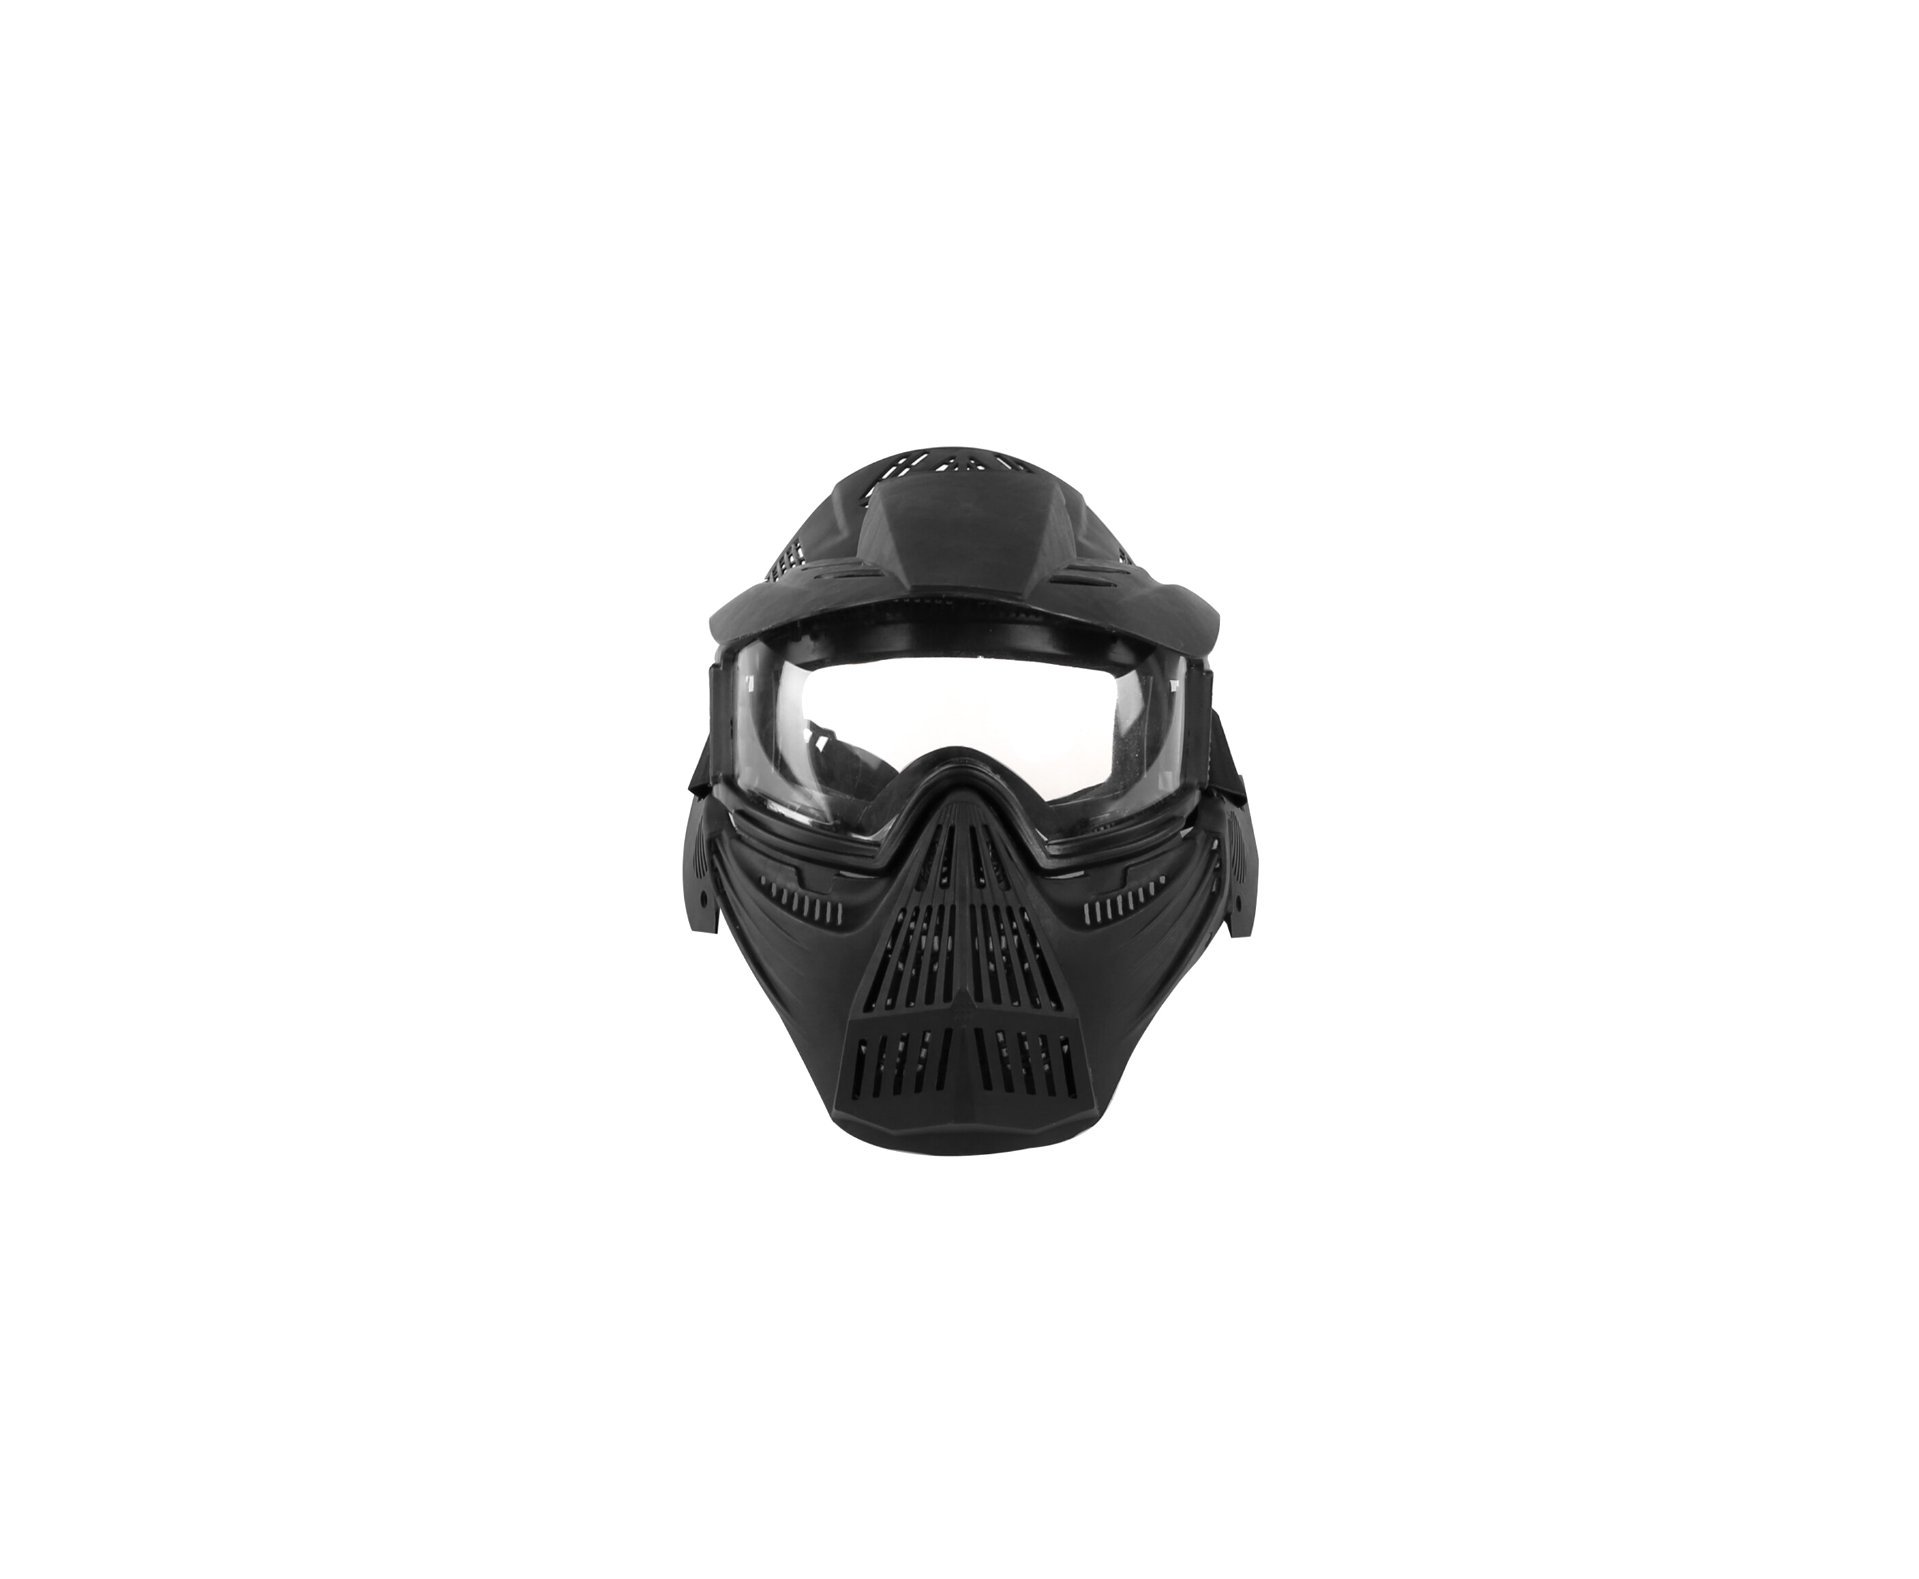 Mascara Airsoft Face Total E Viseira Lentes Em Policarbonato Preta